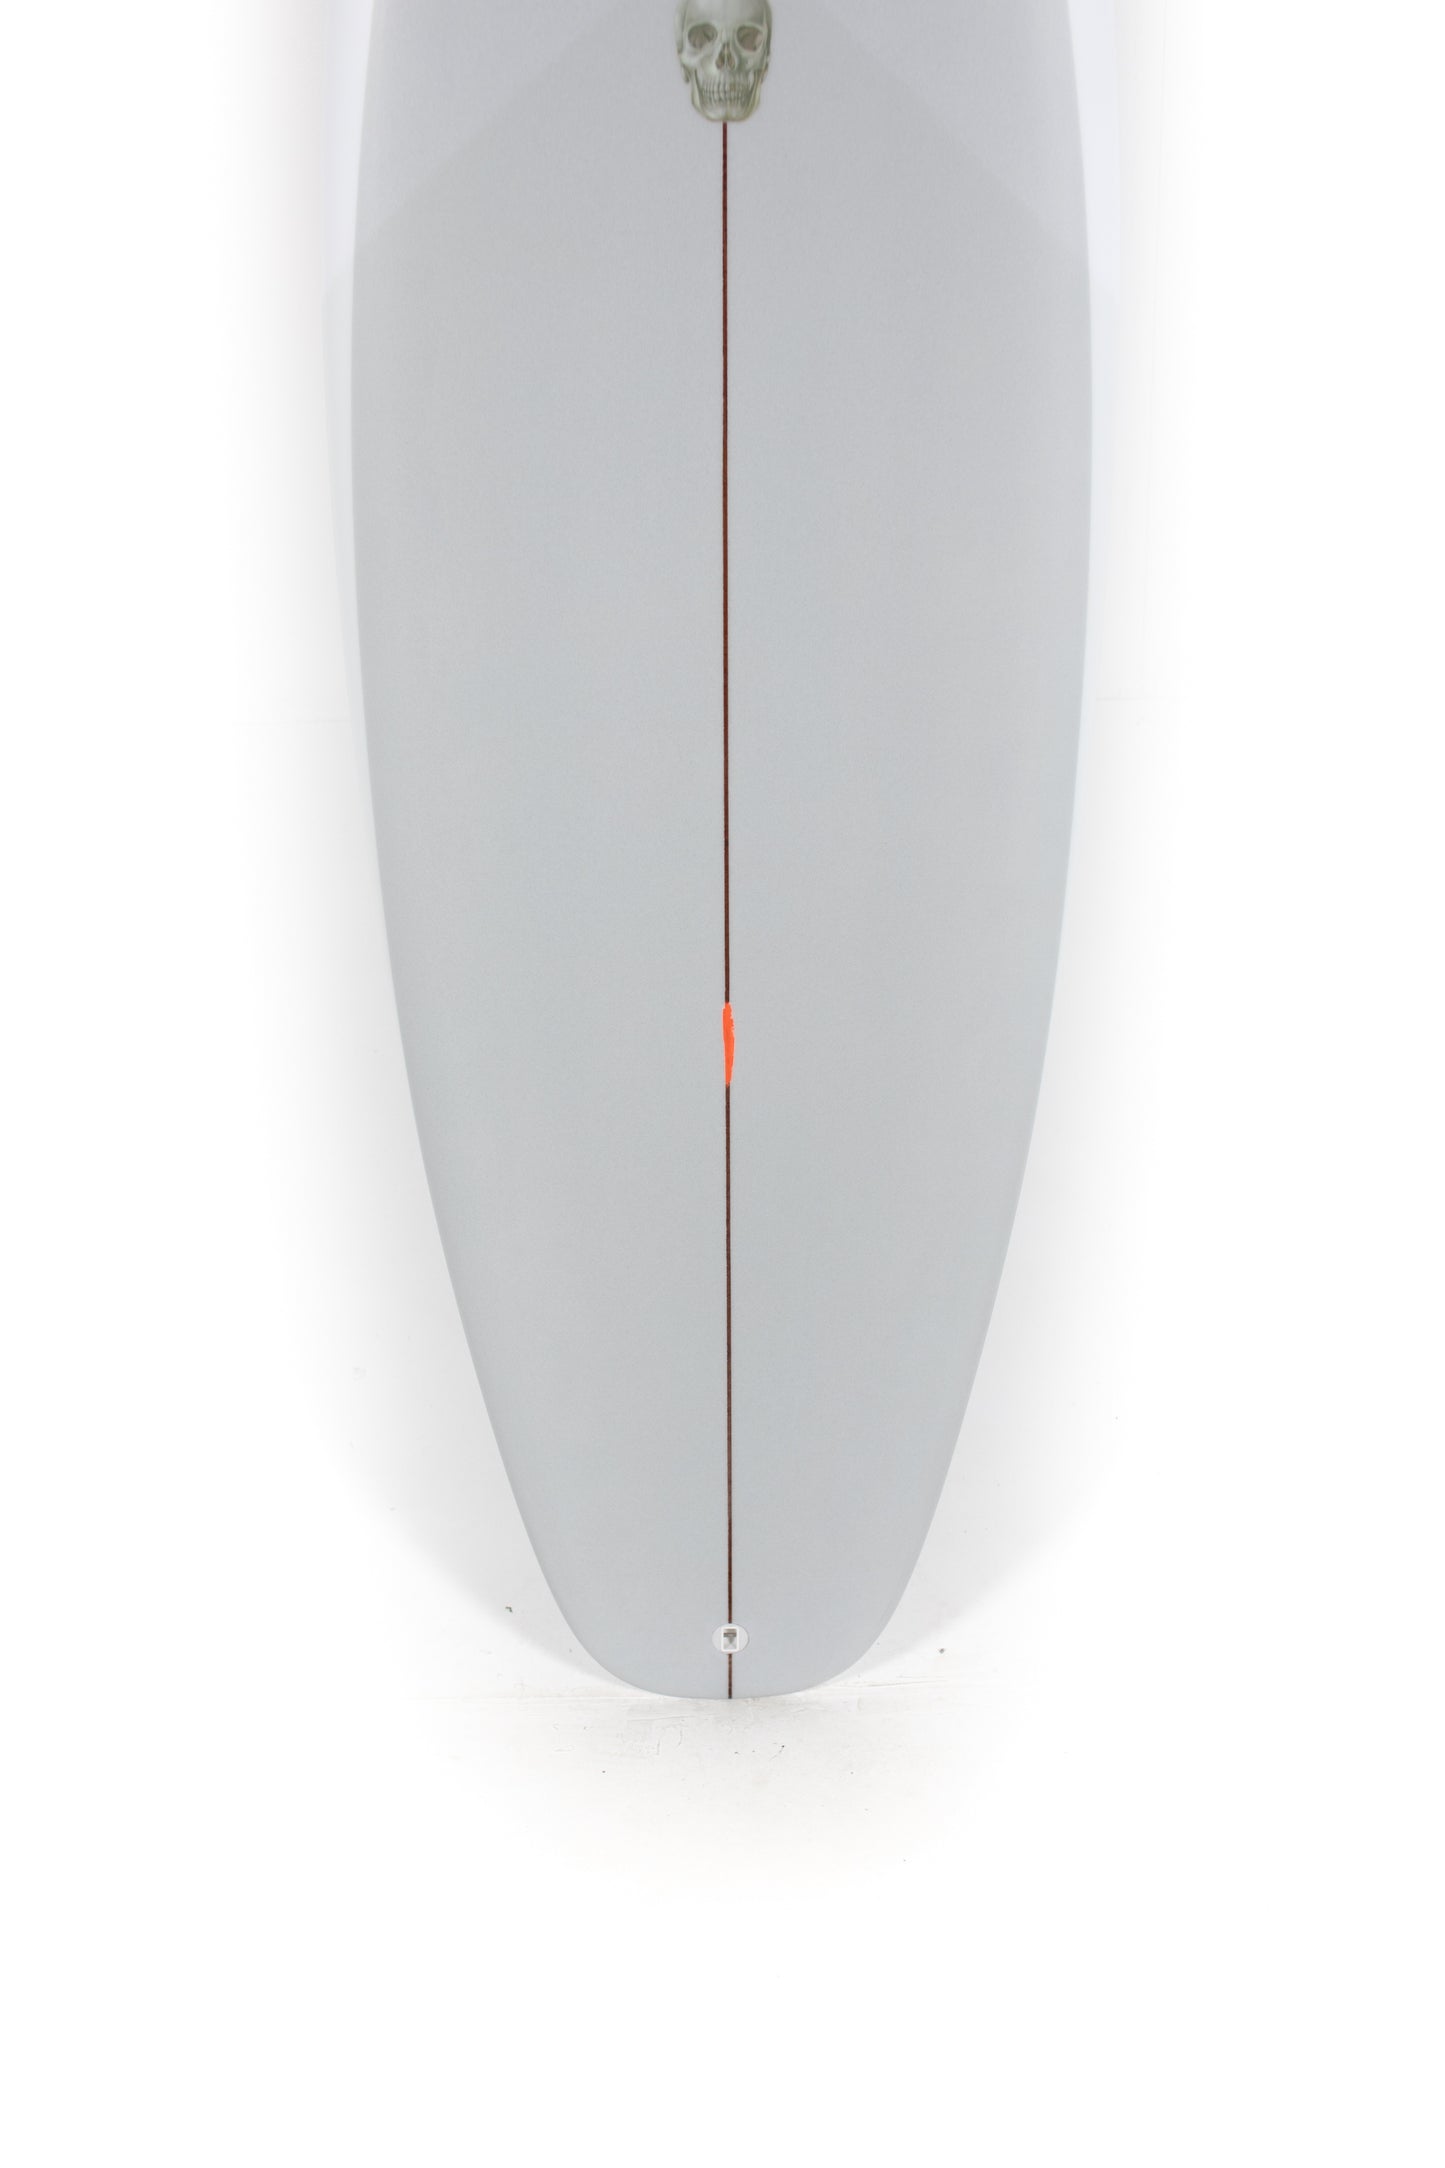 
                  
                    Pukas Surf Shop - Christenson Surfboard  - SURFER ROSA - 5'8” x 19 1/2 x 2 3/8 - CX04999
                  
                